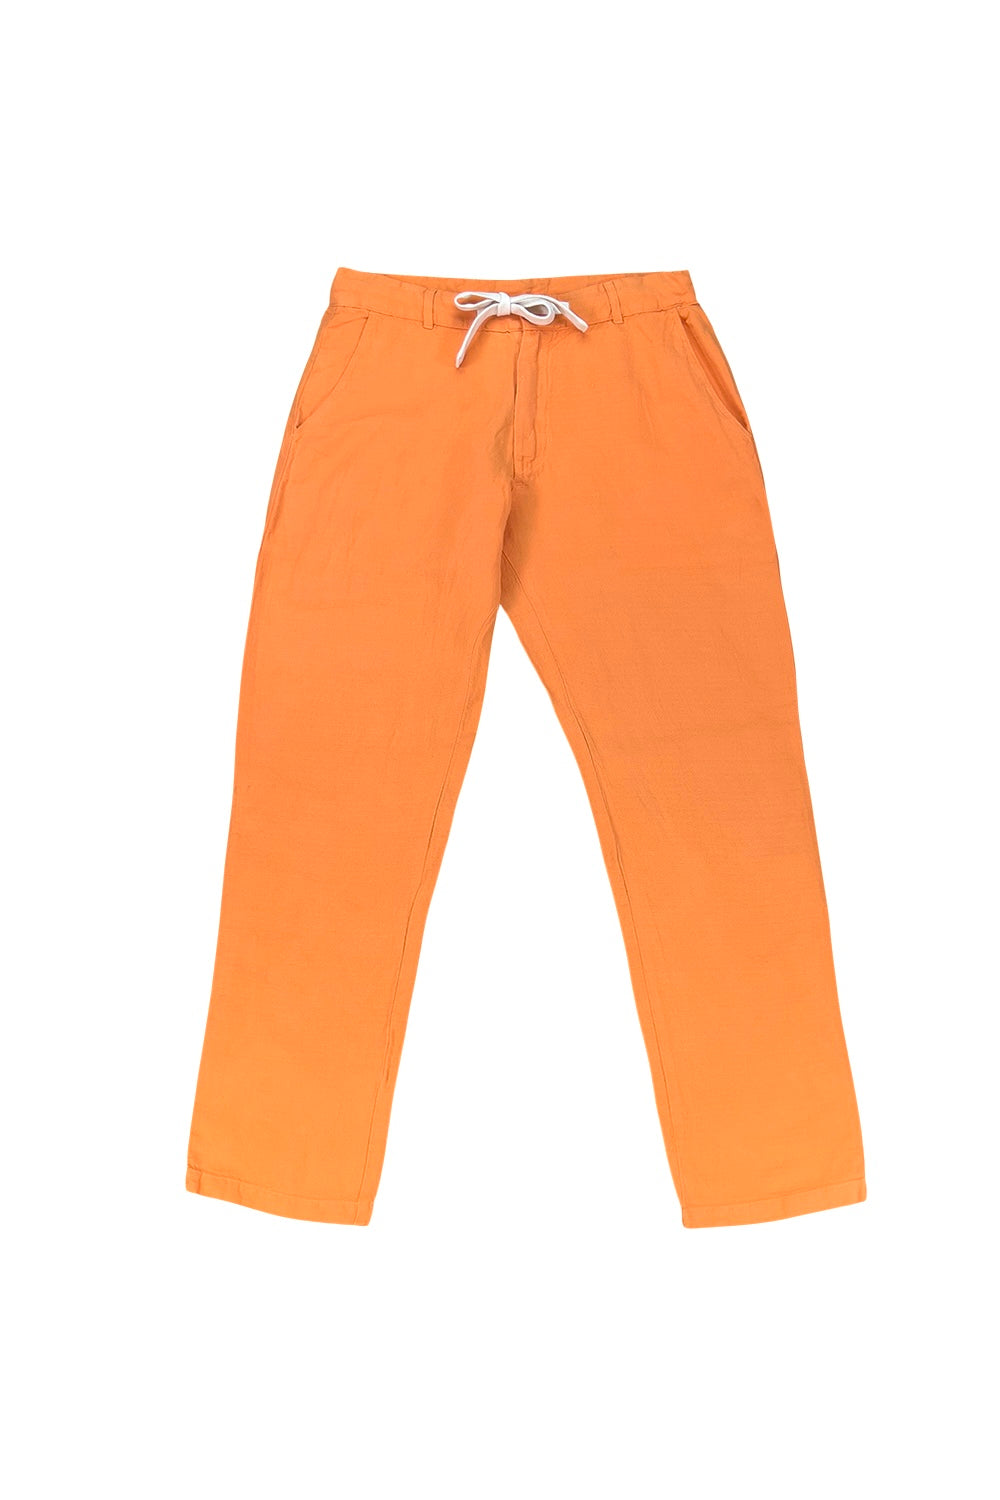 Traverse Pant | Jungmaven Hemp Clothing & Accessories / Color:Apricot Crush